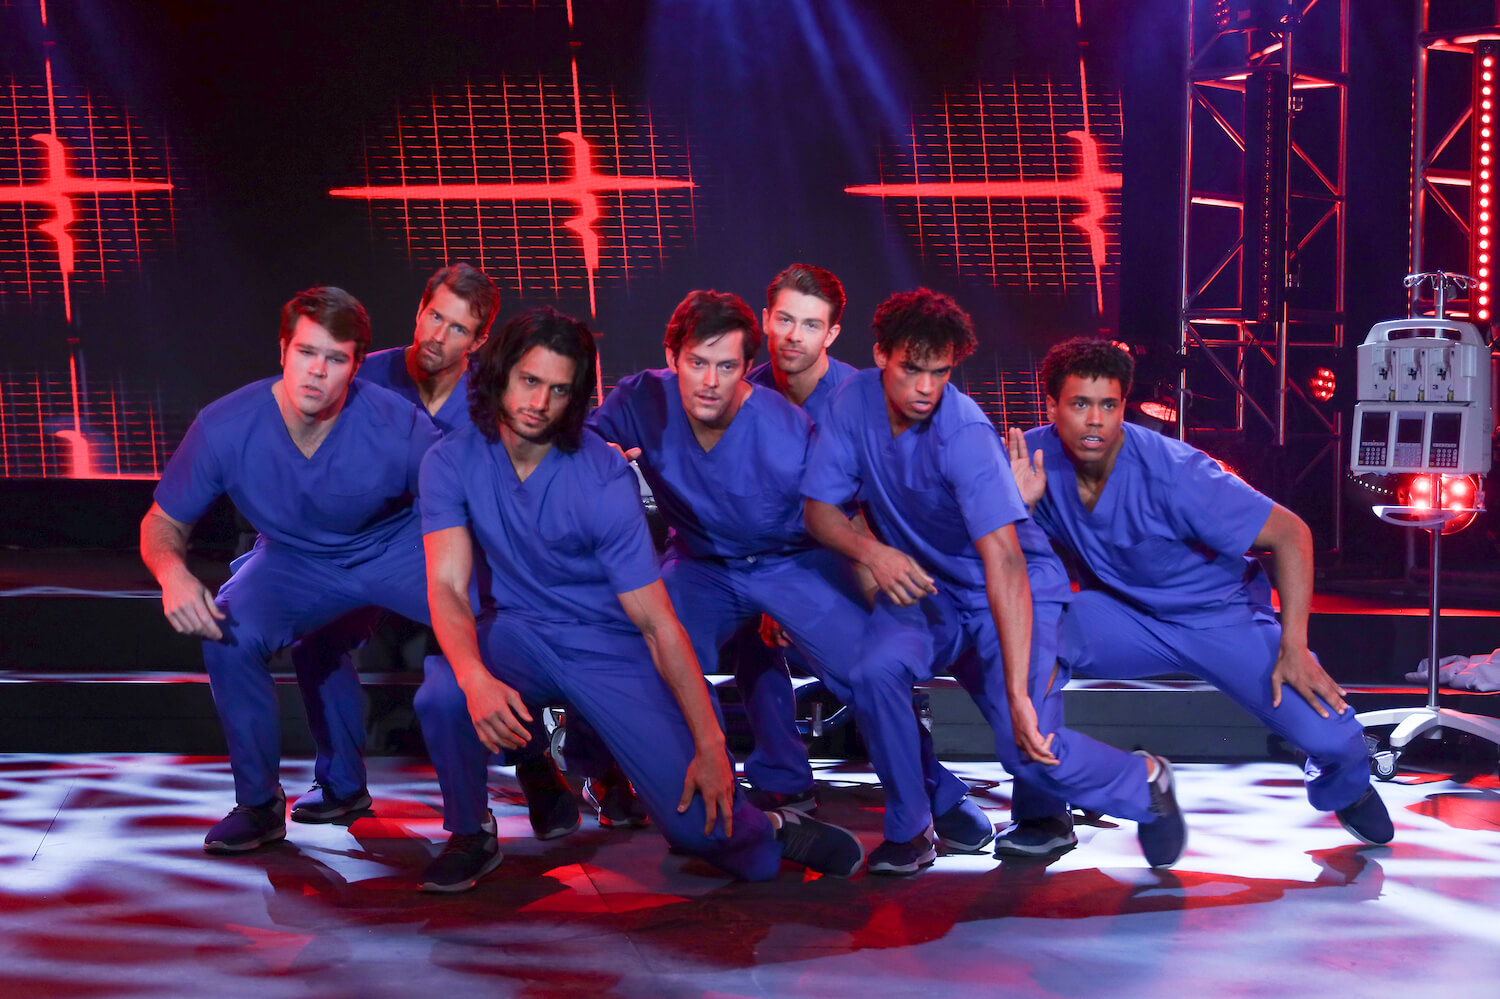 Cast members in 'General Hospital' wearing blue scrubs and kneeling